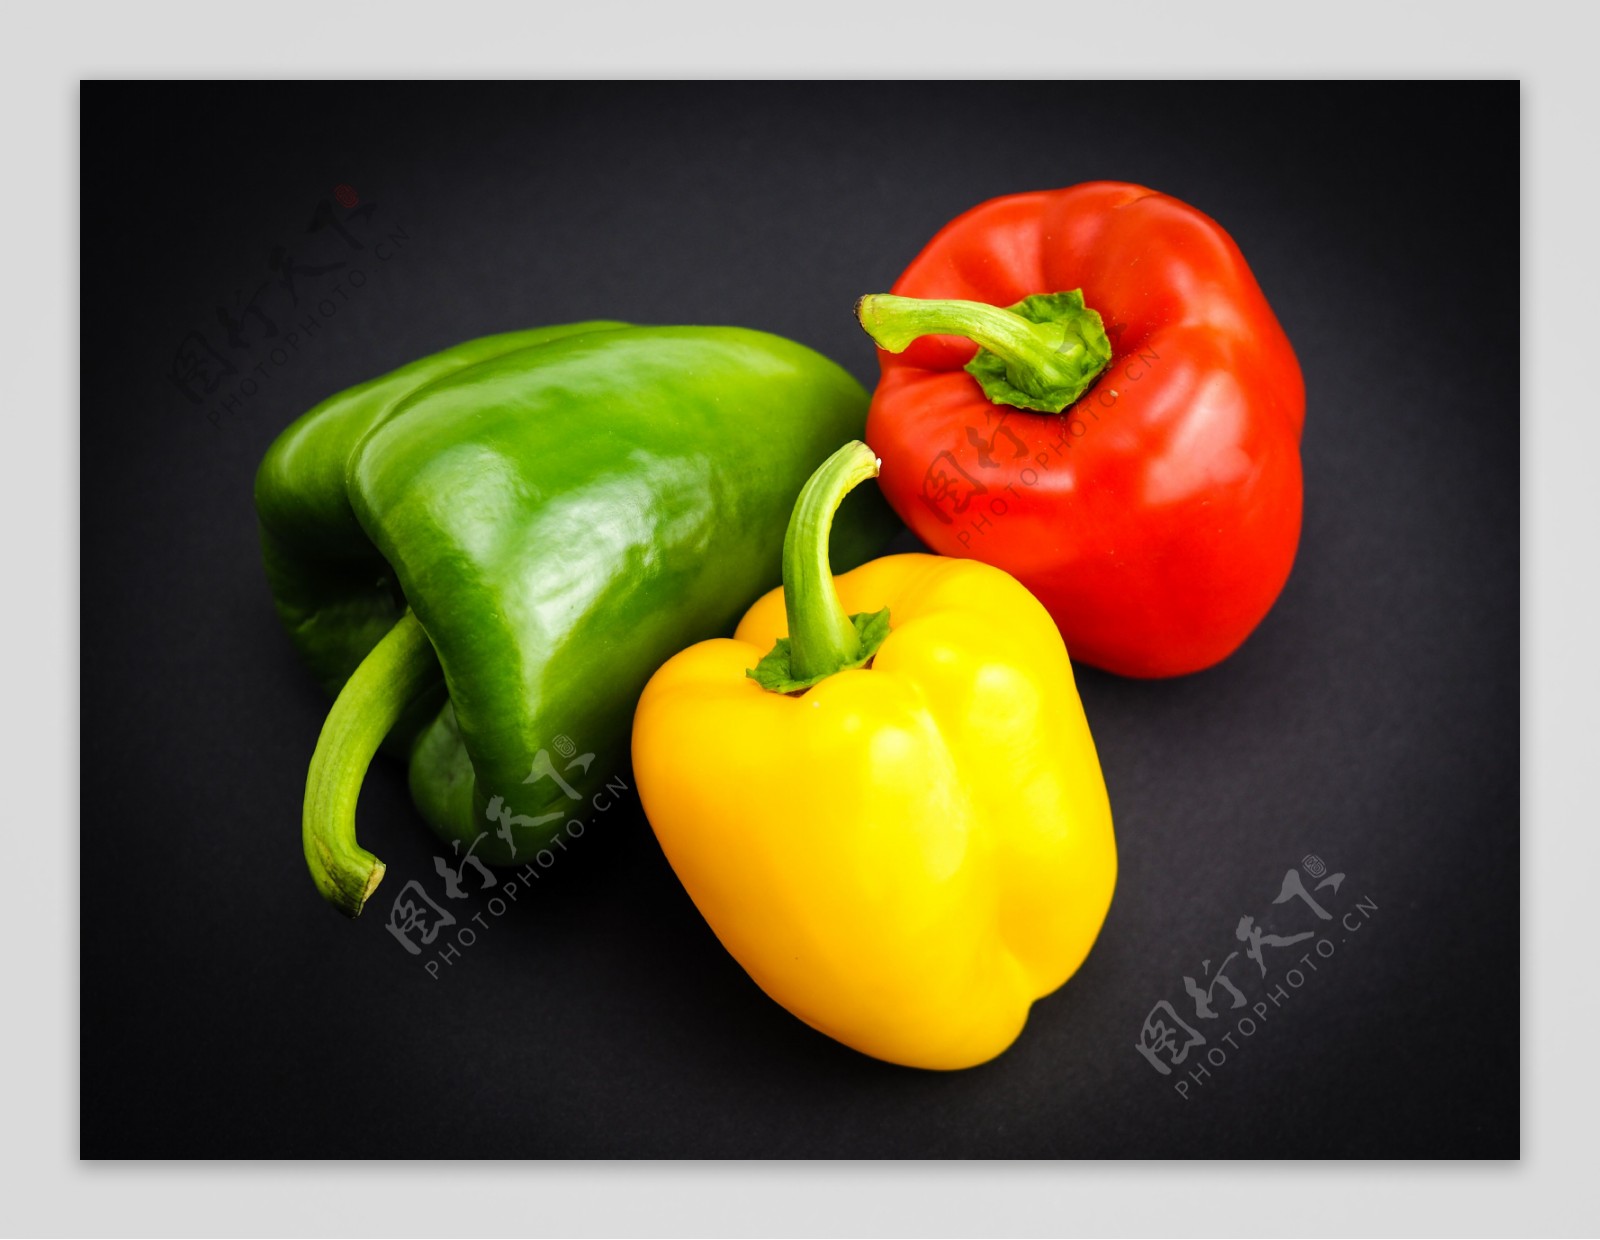 白底蔬菜两个彩椒黄椒红椒彩椒菜椒图片免费下载 - 觅知网